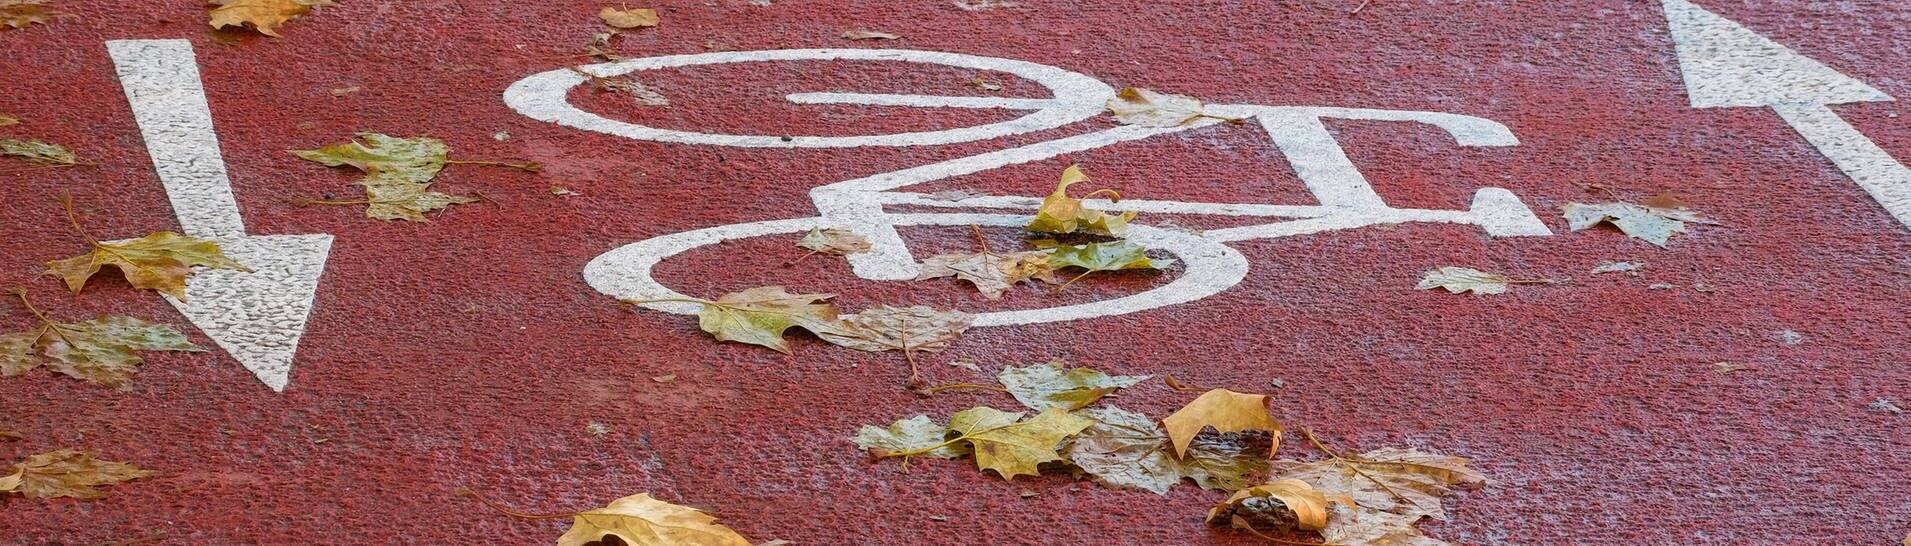 Auf einem Radweg ist ein Fahrrad eingezeichnet (Foto: IMAGO, IMAGO / Michael Gstettenbauer)